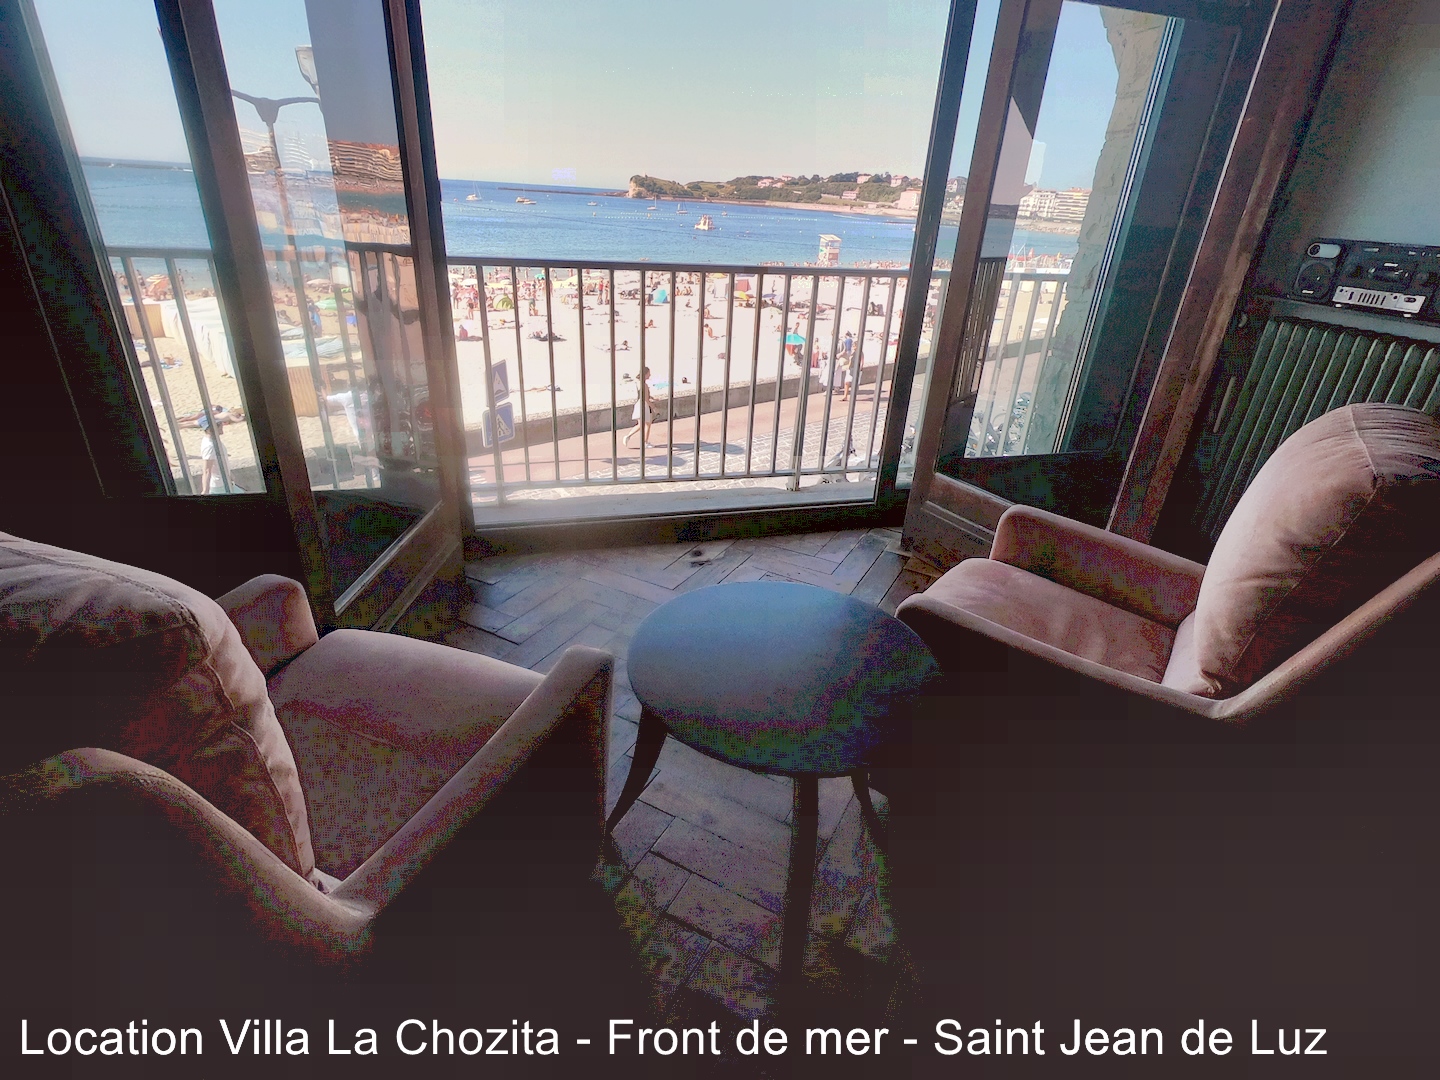 villa la chozita downtown facing the beach - Townhouses for Rent in Saint- Jean-de-Luz, Nouvelle-Aquitaine, France - Airbnb